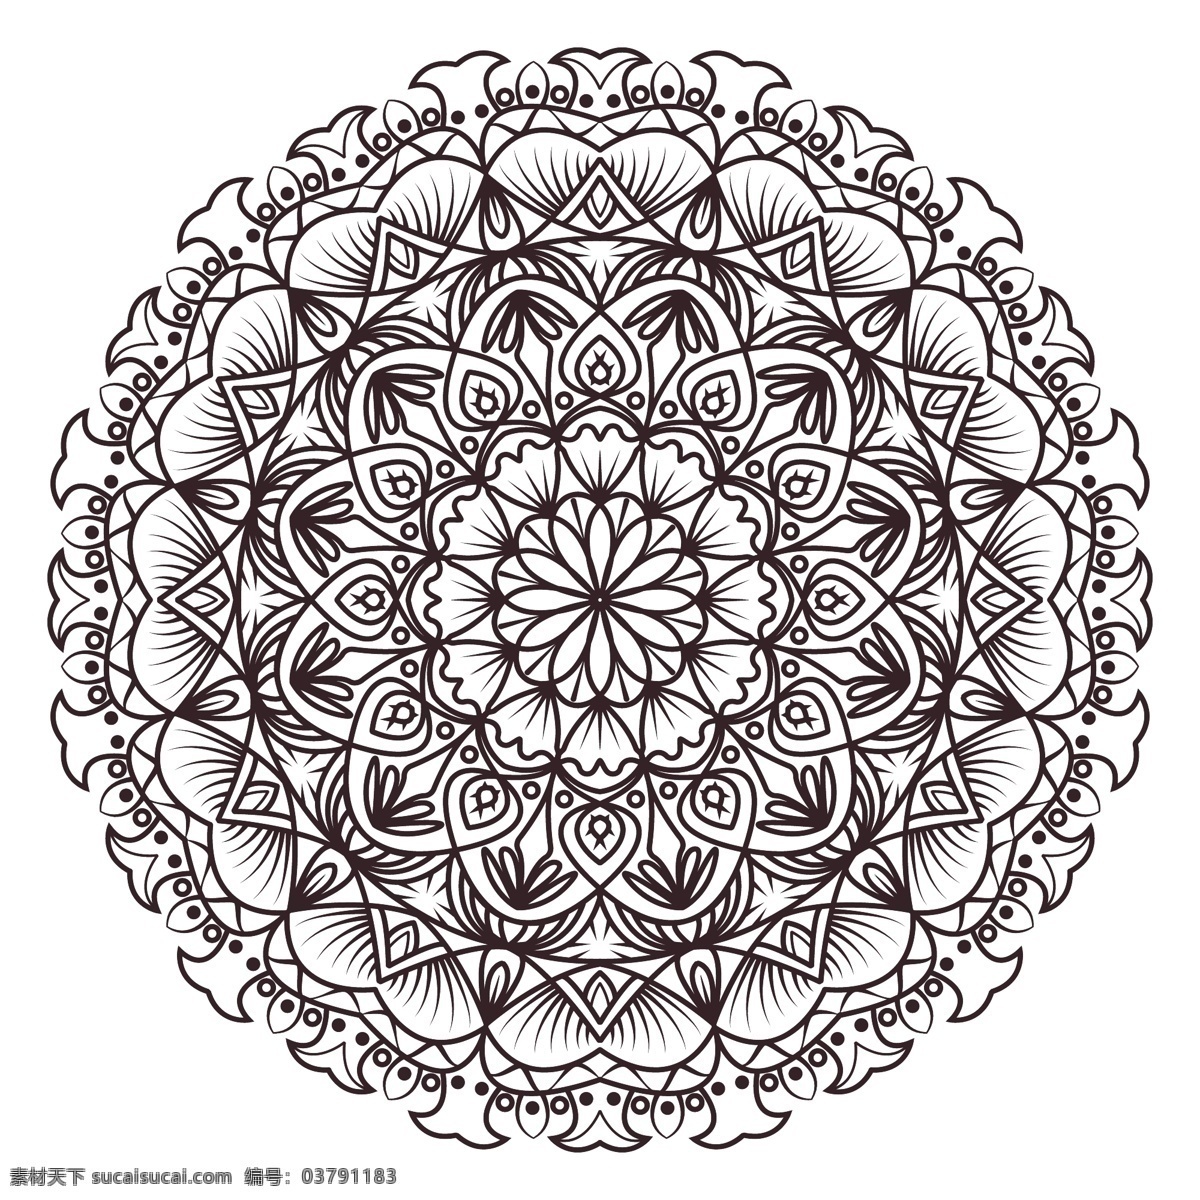 观赏 曼荼罗 花卉 抽象 装饰 曼陀罗 阿拉伯文 印度 形状 伊斯兰教 花卉装饰 东方 象征 抽象的形状 华丽的 精神的